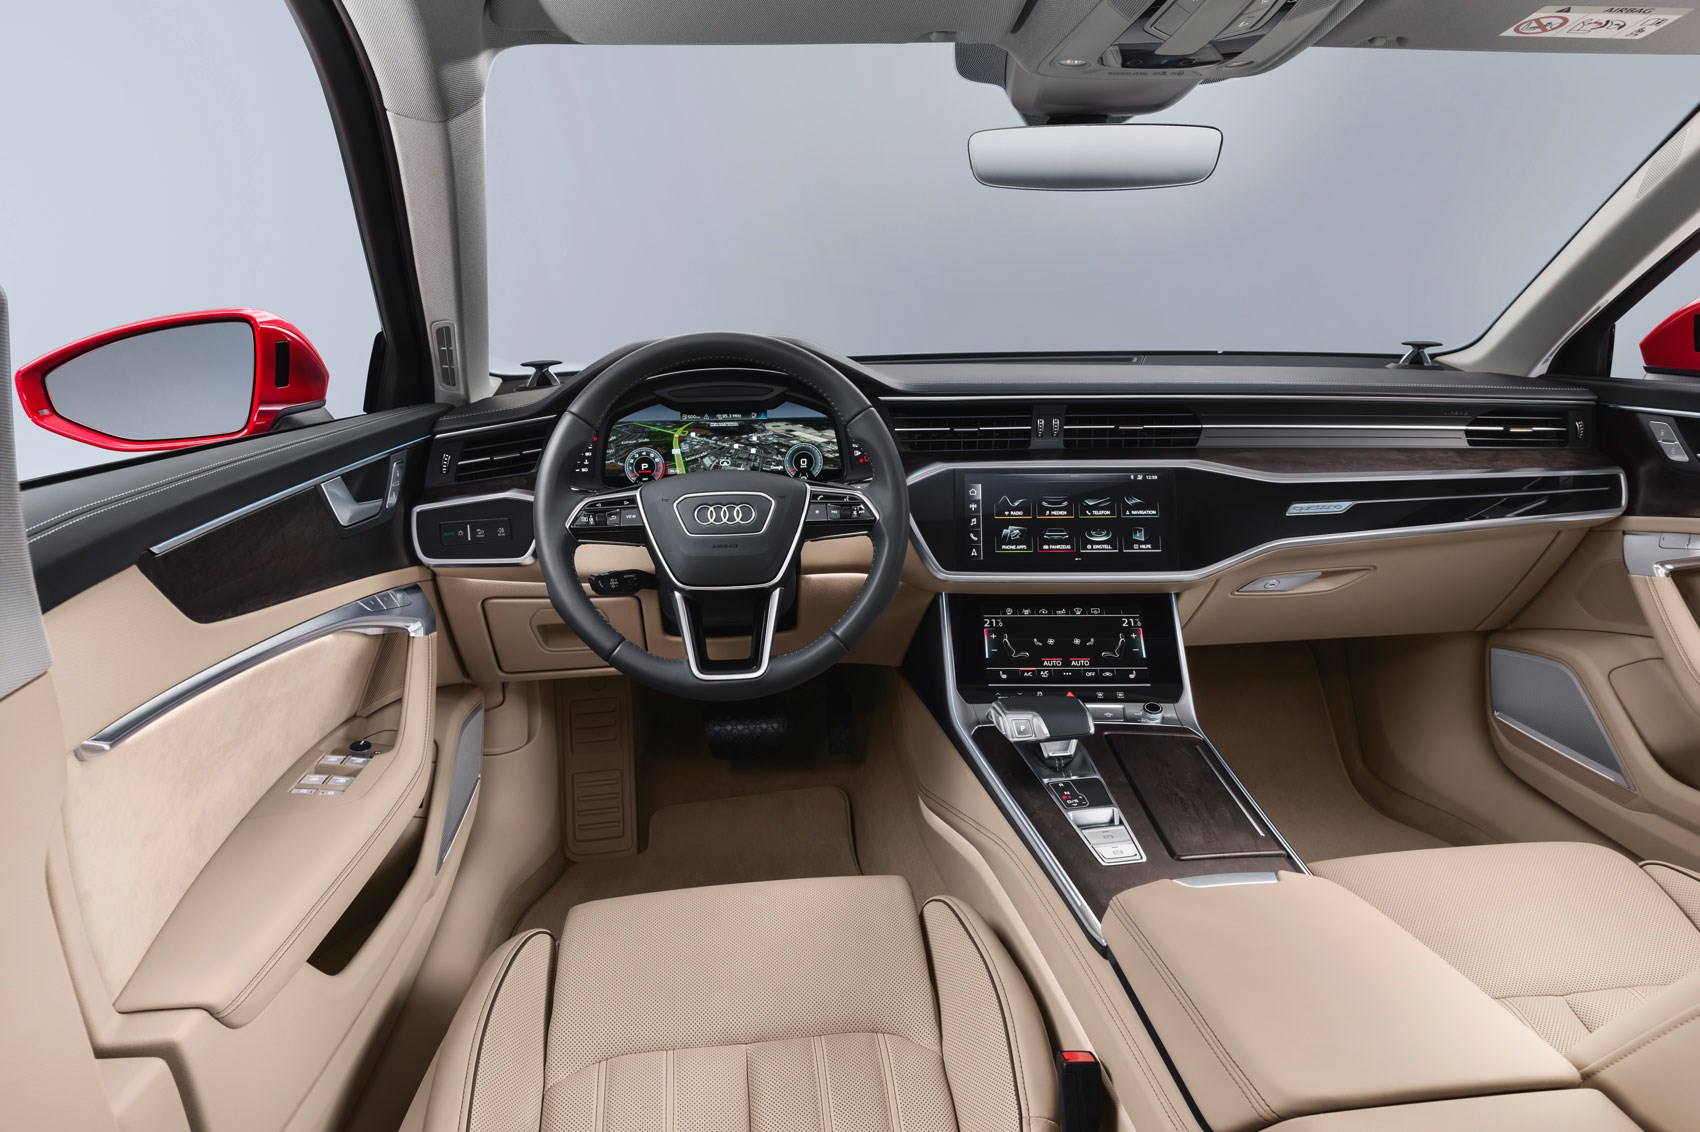 hop elektrode Aanzienlijk Audi A6 saloon (2018): interior, price and release date | CAR Magazine